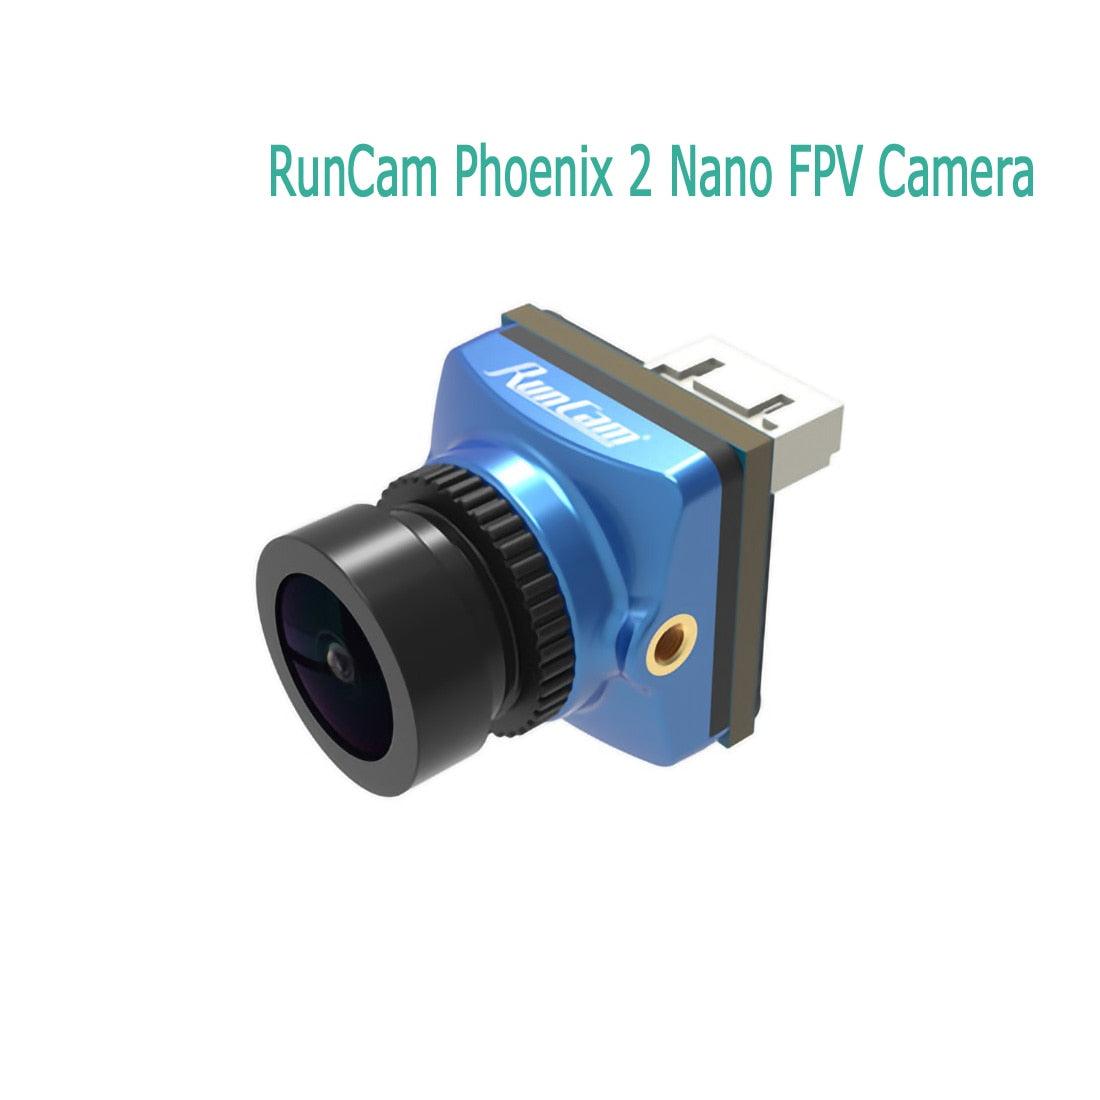 RunCam Phoenix2 Phoenix 2 FPV Camera Micro 19x19 / Nano 14x14 1000TVL 2.1mm 16:9/4:3 PAL NTSC Switchable For Rc FPV Drones - RCDrone